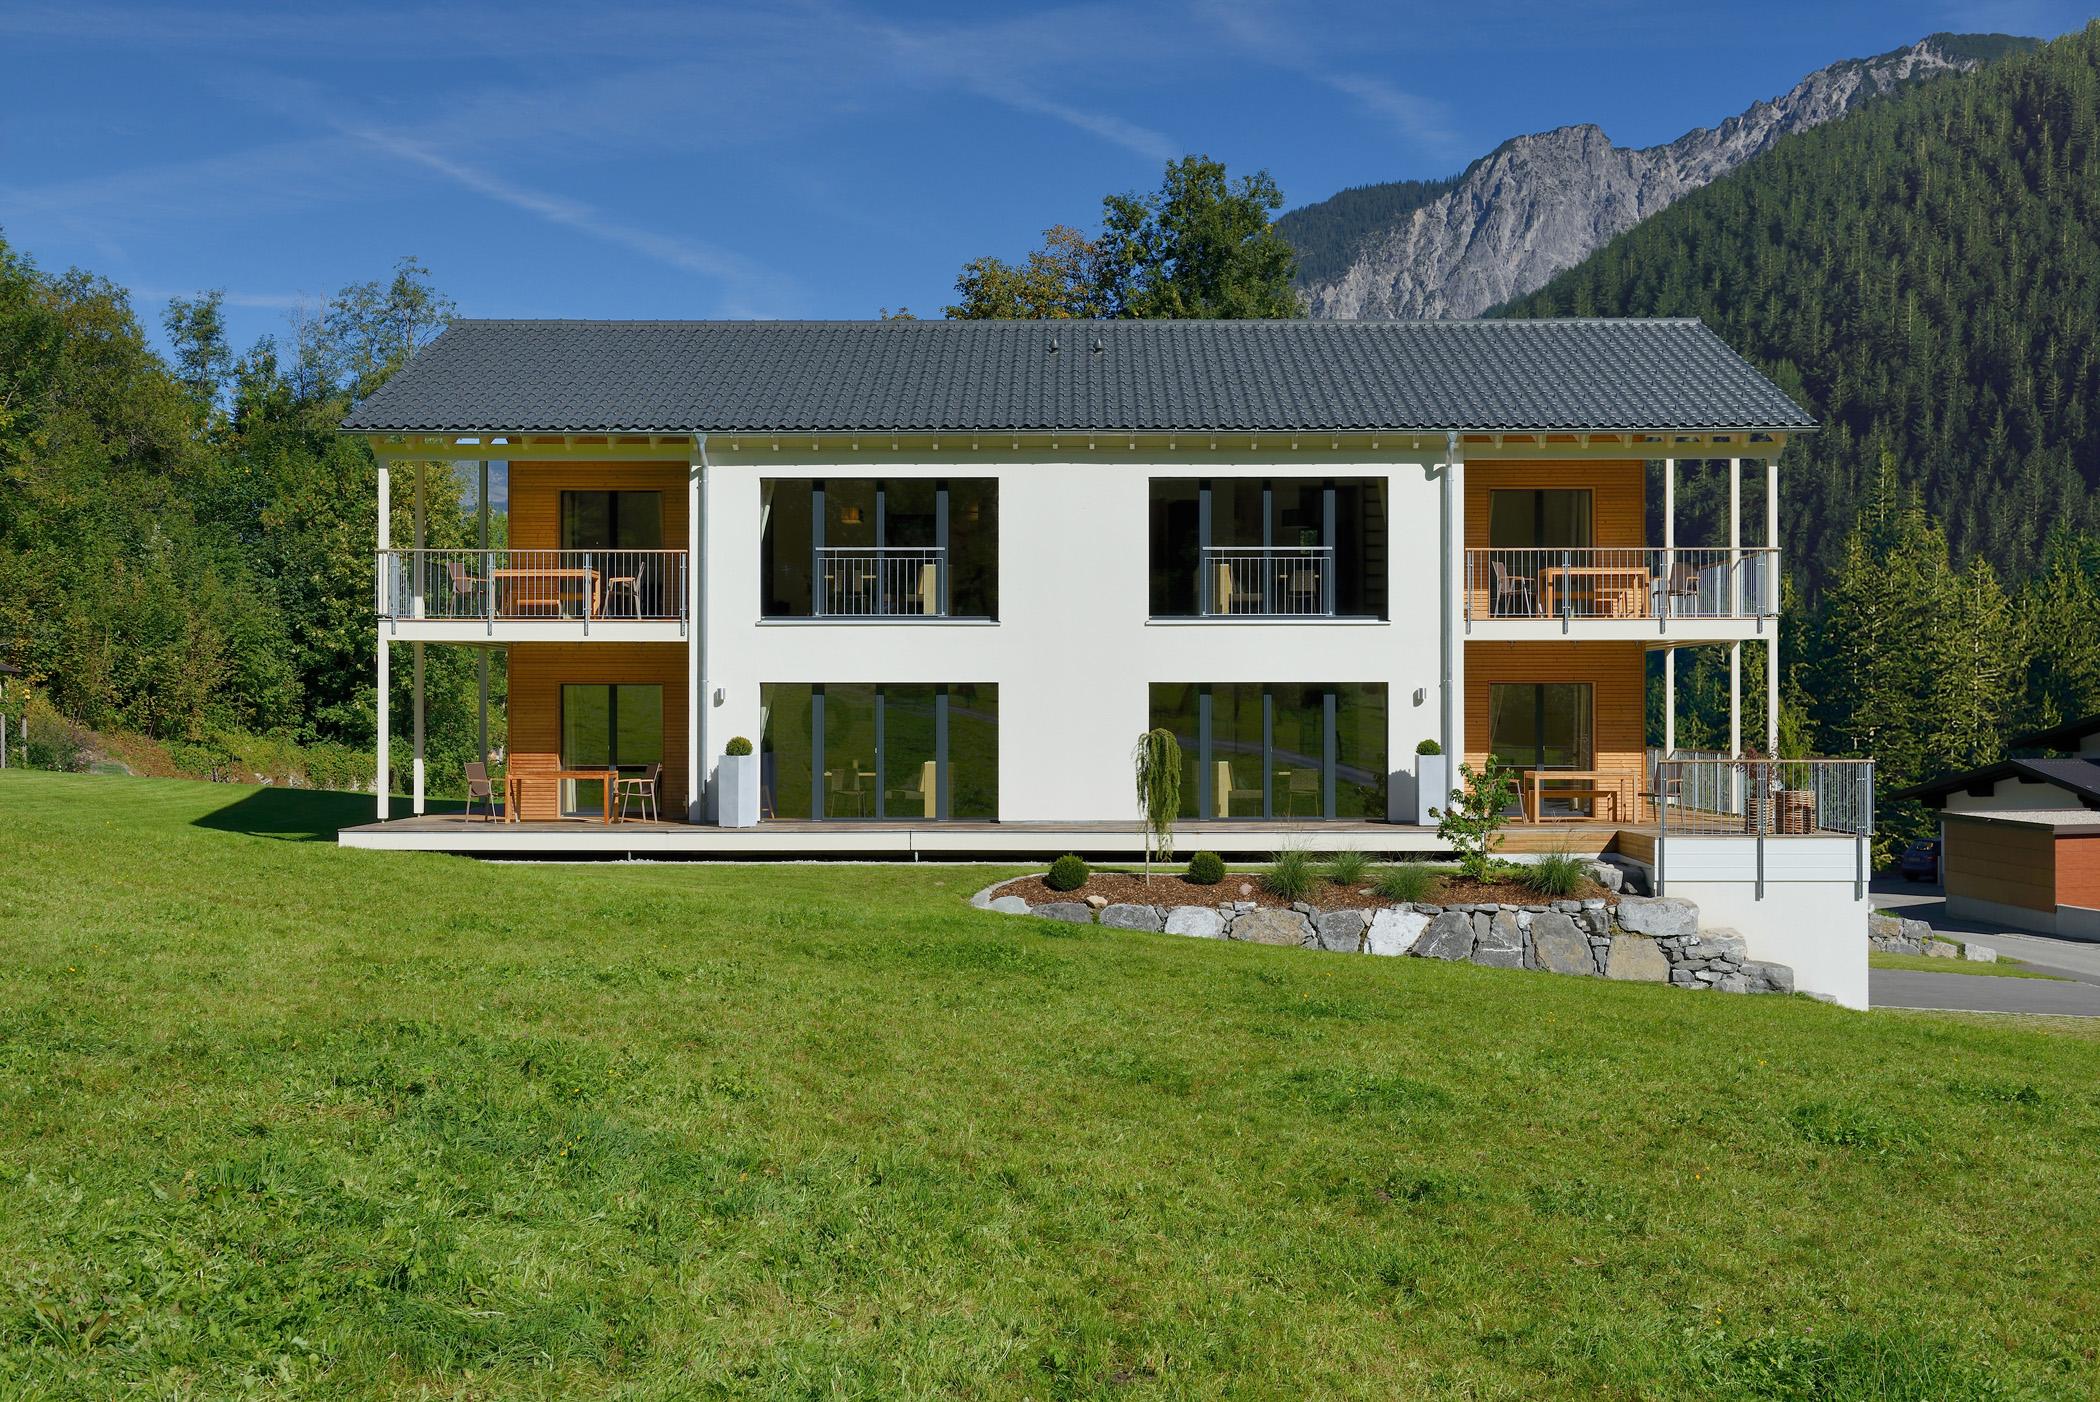 Haus Volfantana #terrasse #holzfassade #ferienwohnung ©Baufritz GmbH & Co. KG